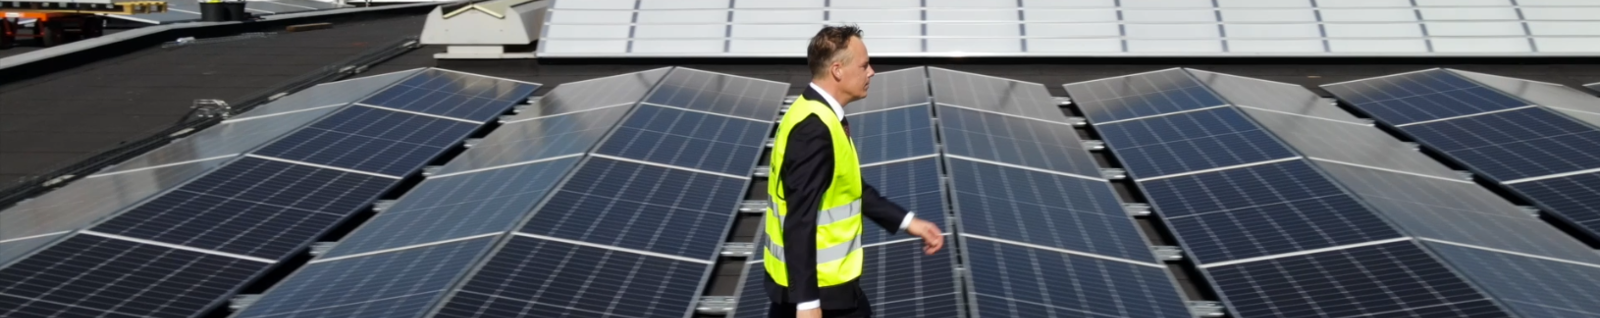 Van Leeuwen investiert in grünen Strom vom eigenen Dach